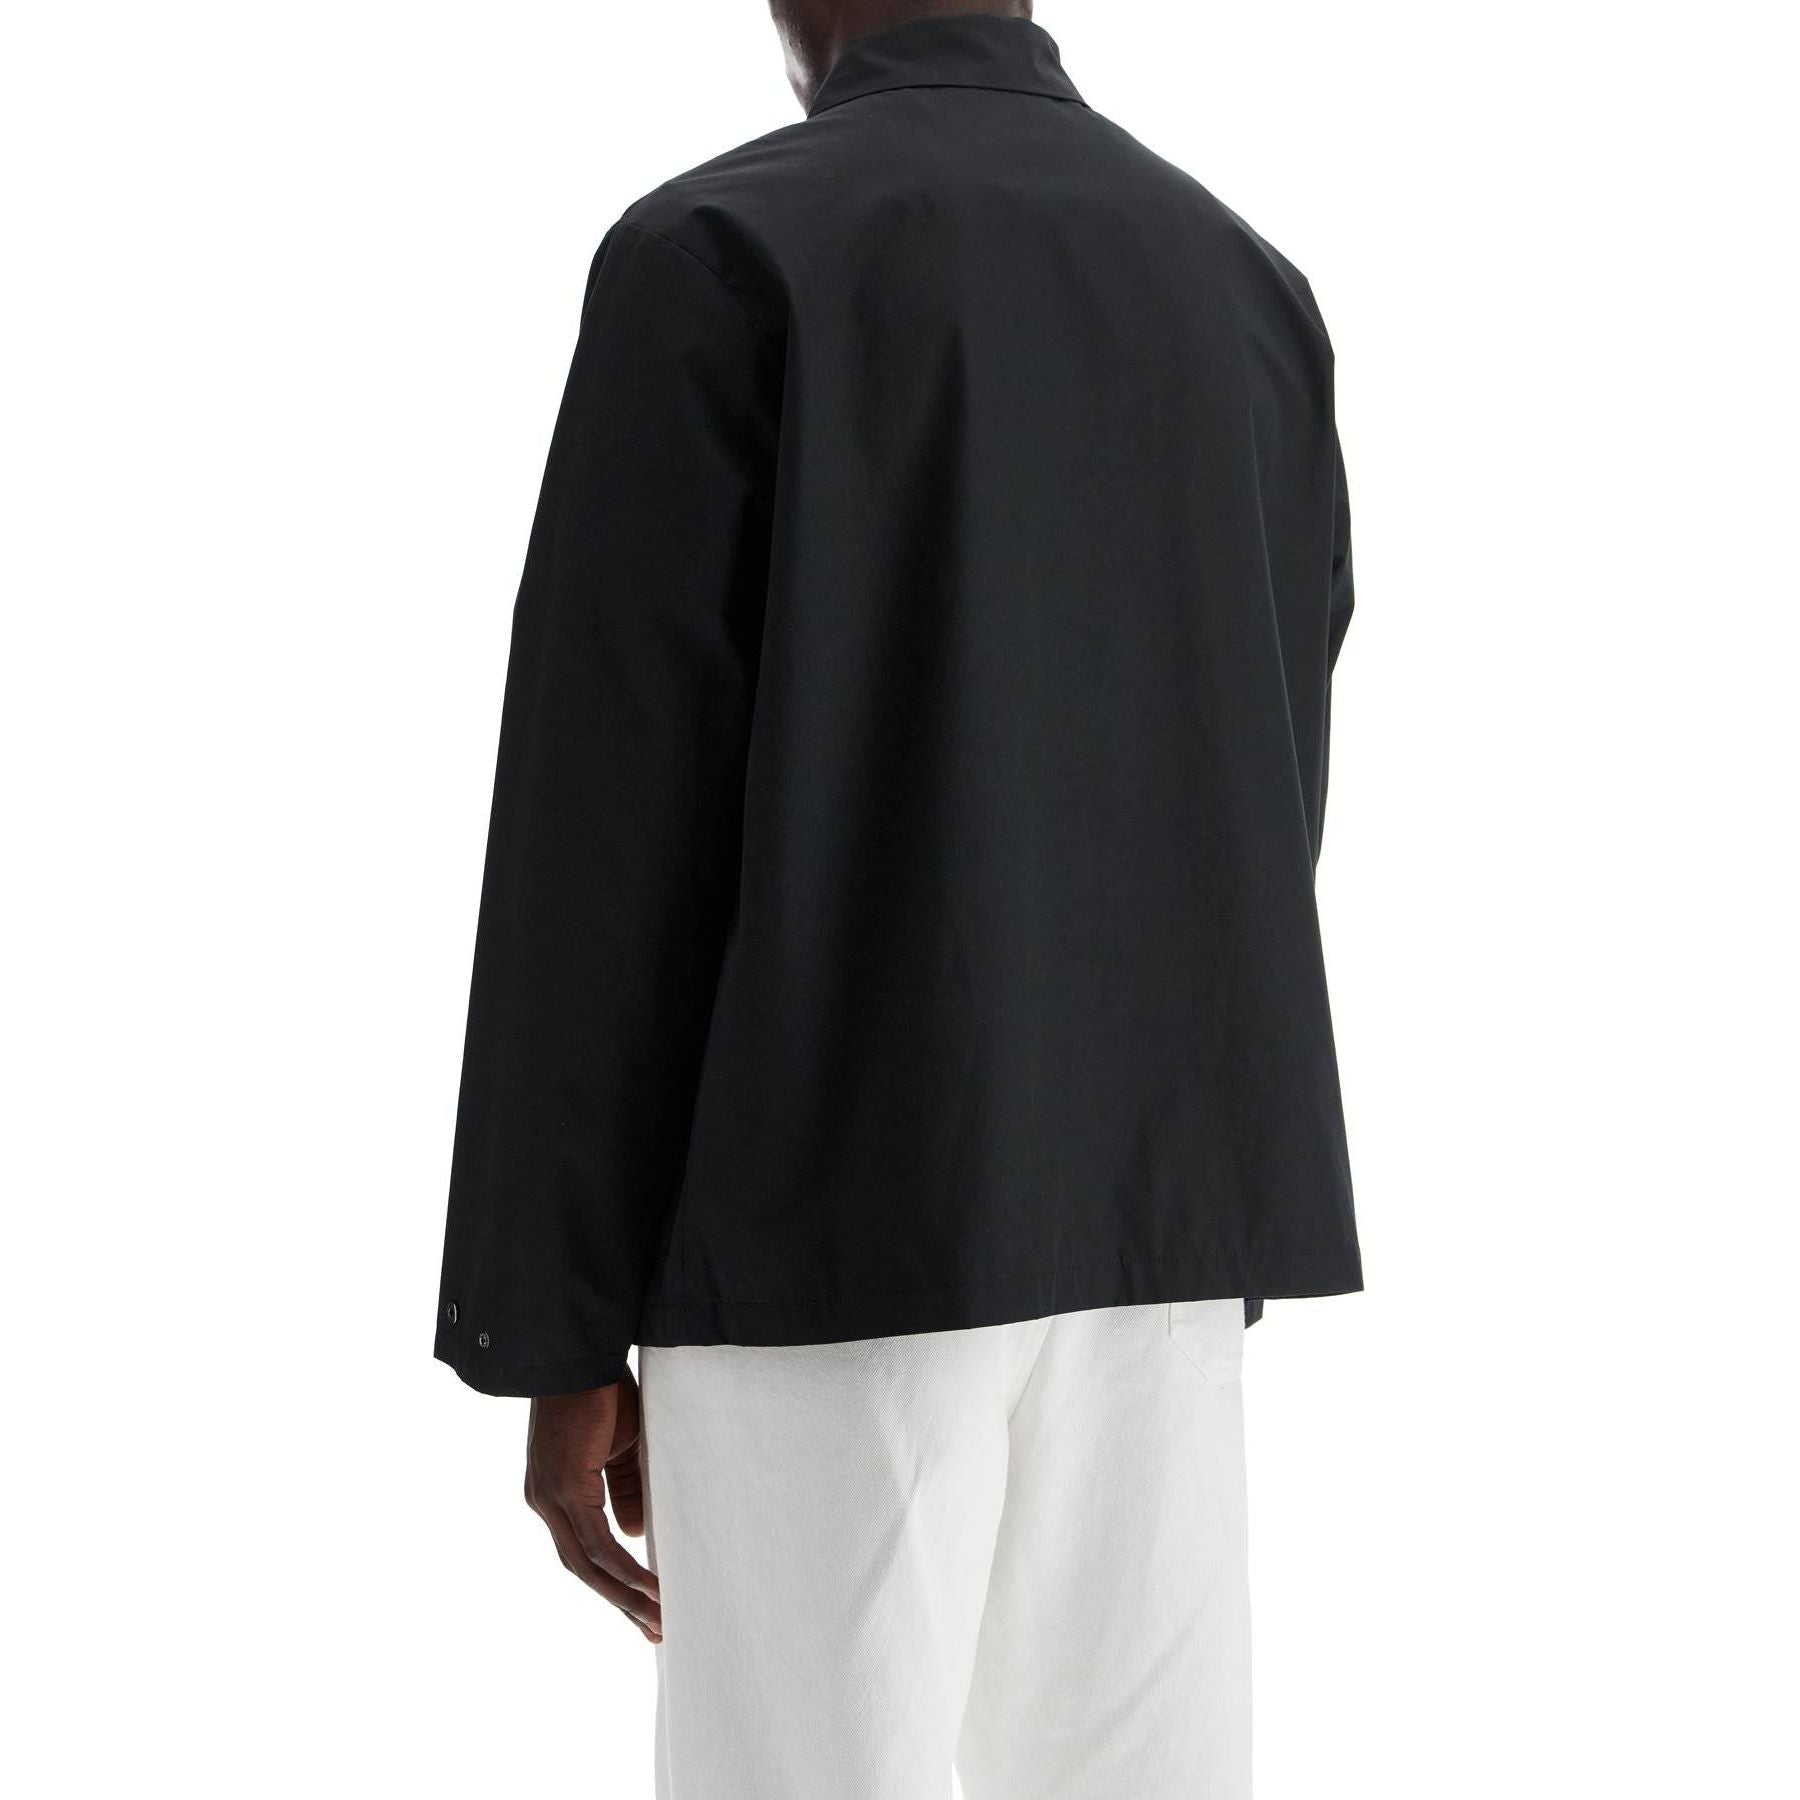 Regis Cotton-Blend Jacket